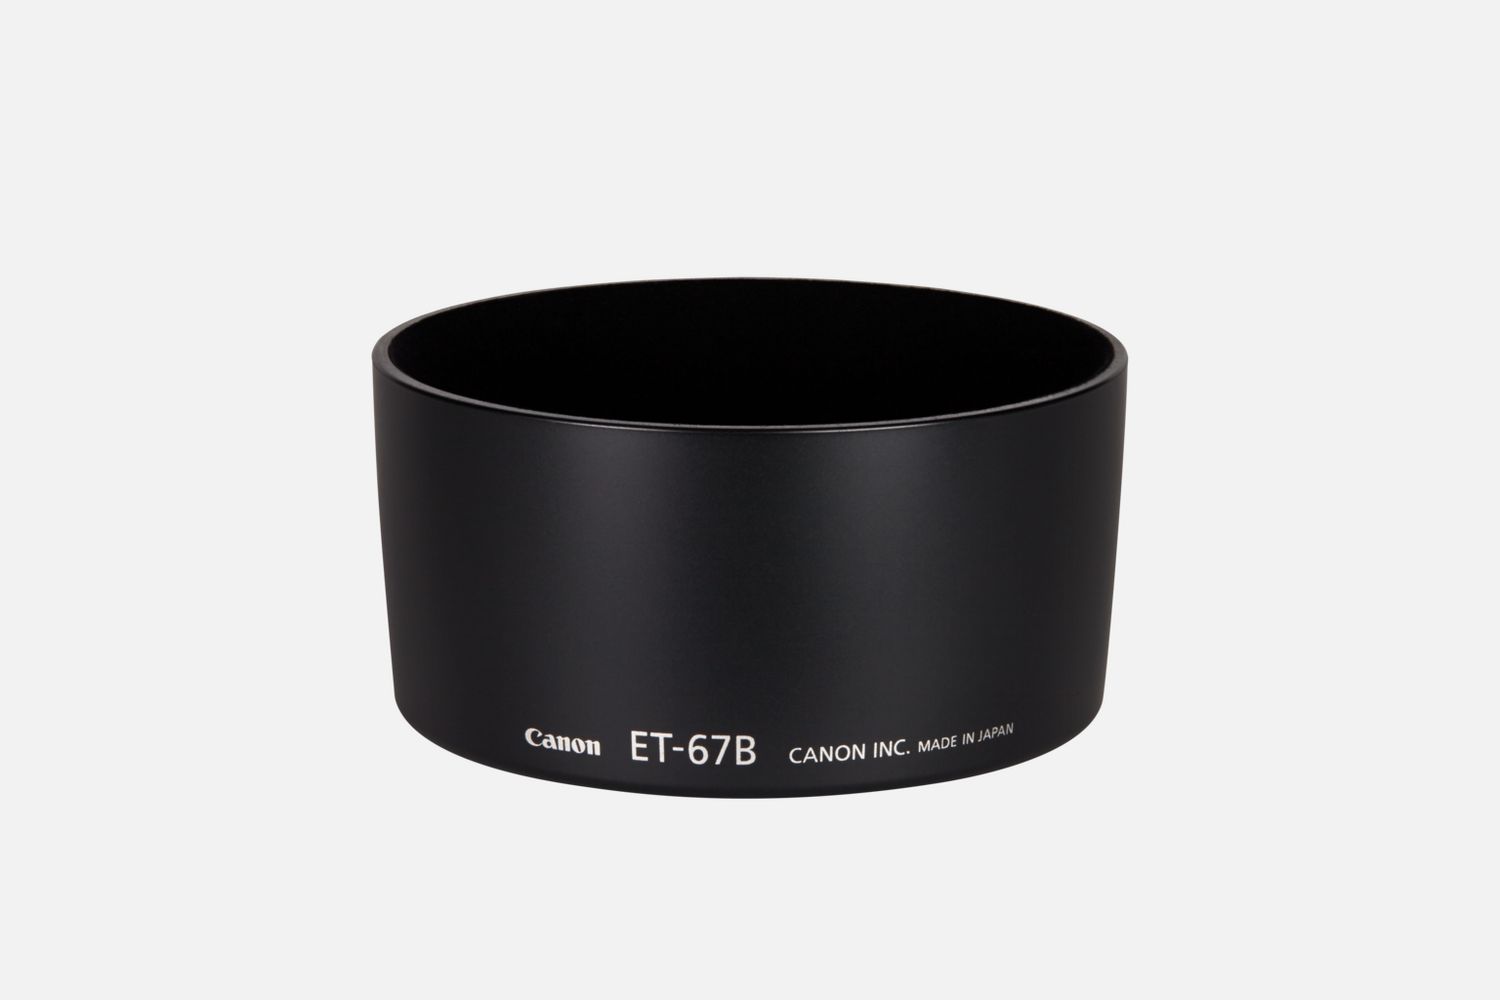 Passt auf das Objektiv EF-S 60mm 1:2,8 Makro USM, reduziert Reflexionen, die durch direkt auf die Frontlinse auffallendes Licht hervorgerufen werden.      Kompatibilitt       EF-S 60mm f/2.8 Macro USM